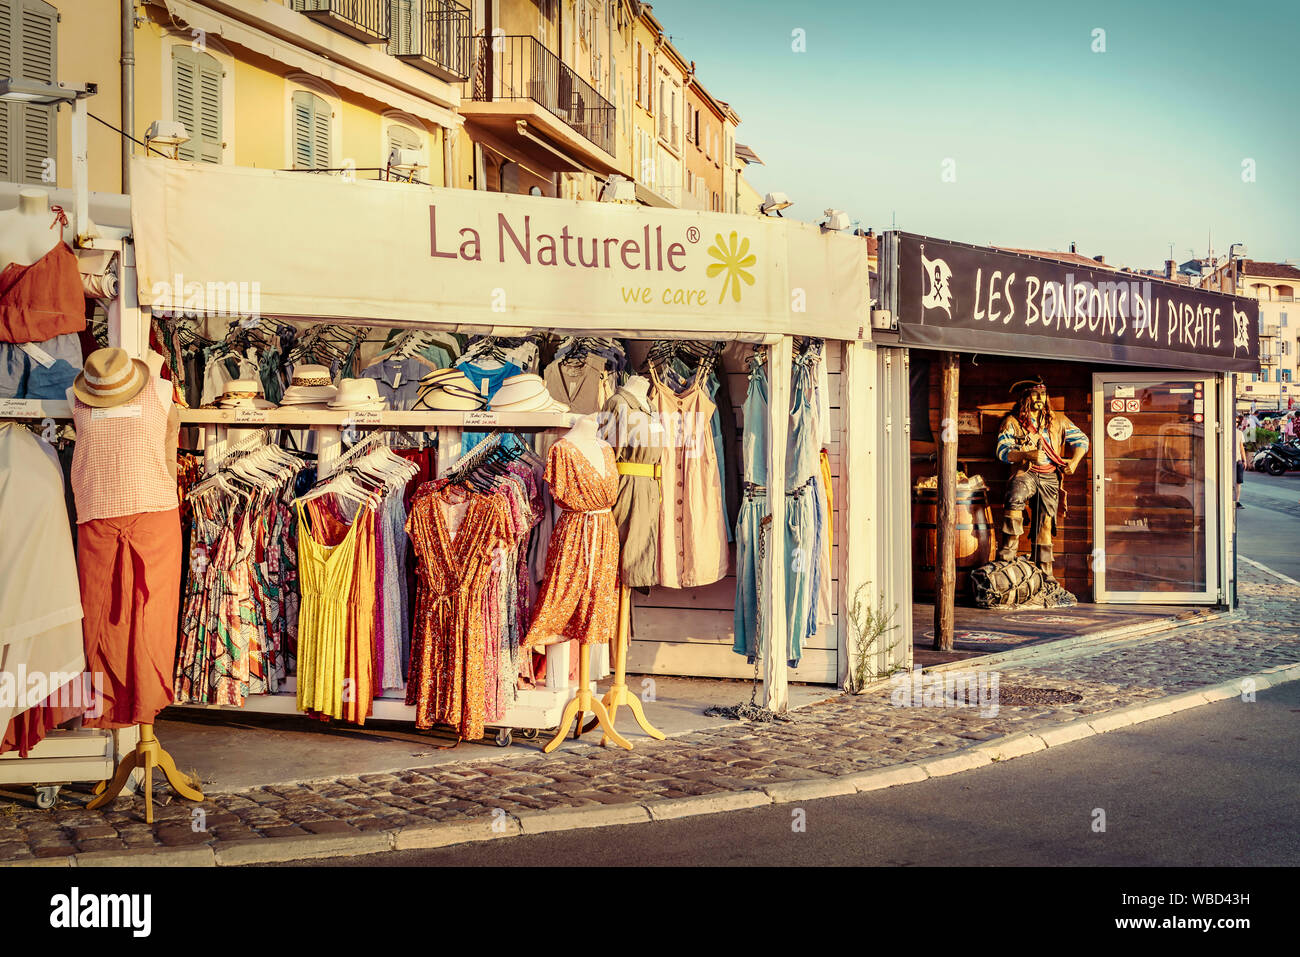 Boutique La Naturelle,  View Port, Saint Tropez,  Côte d ' Azur, Var, france Stock Photo